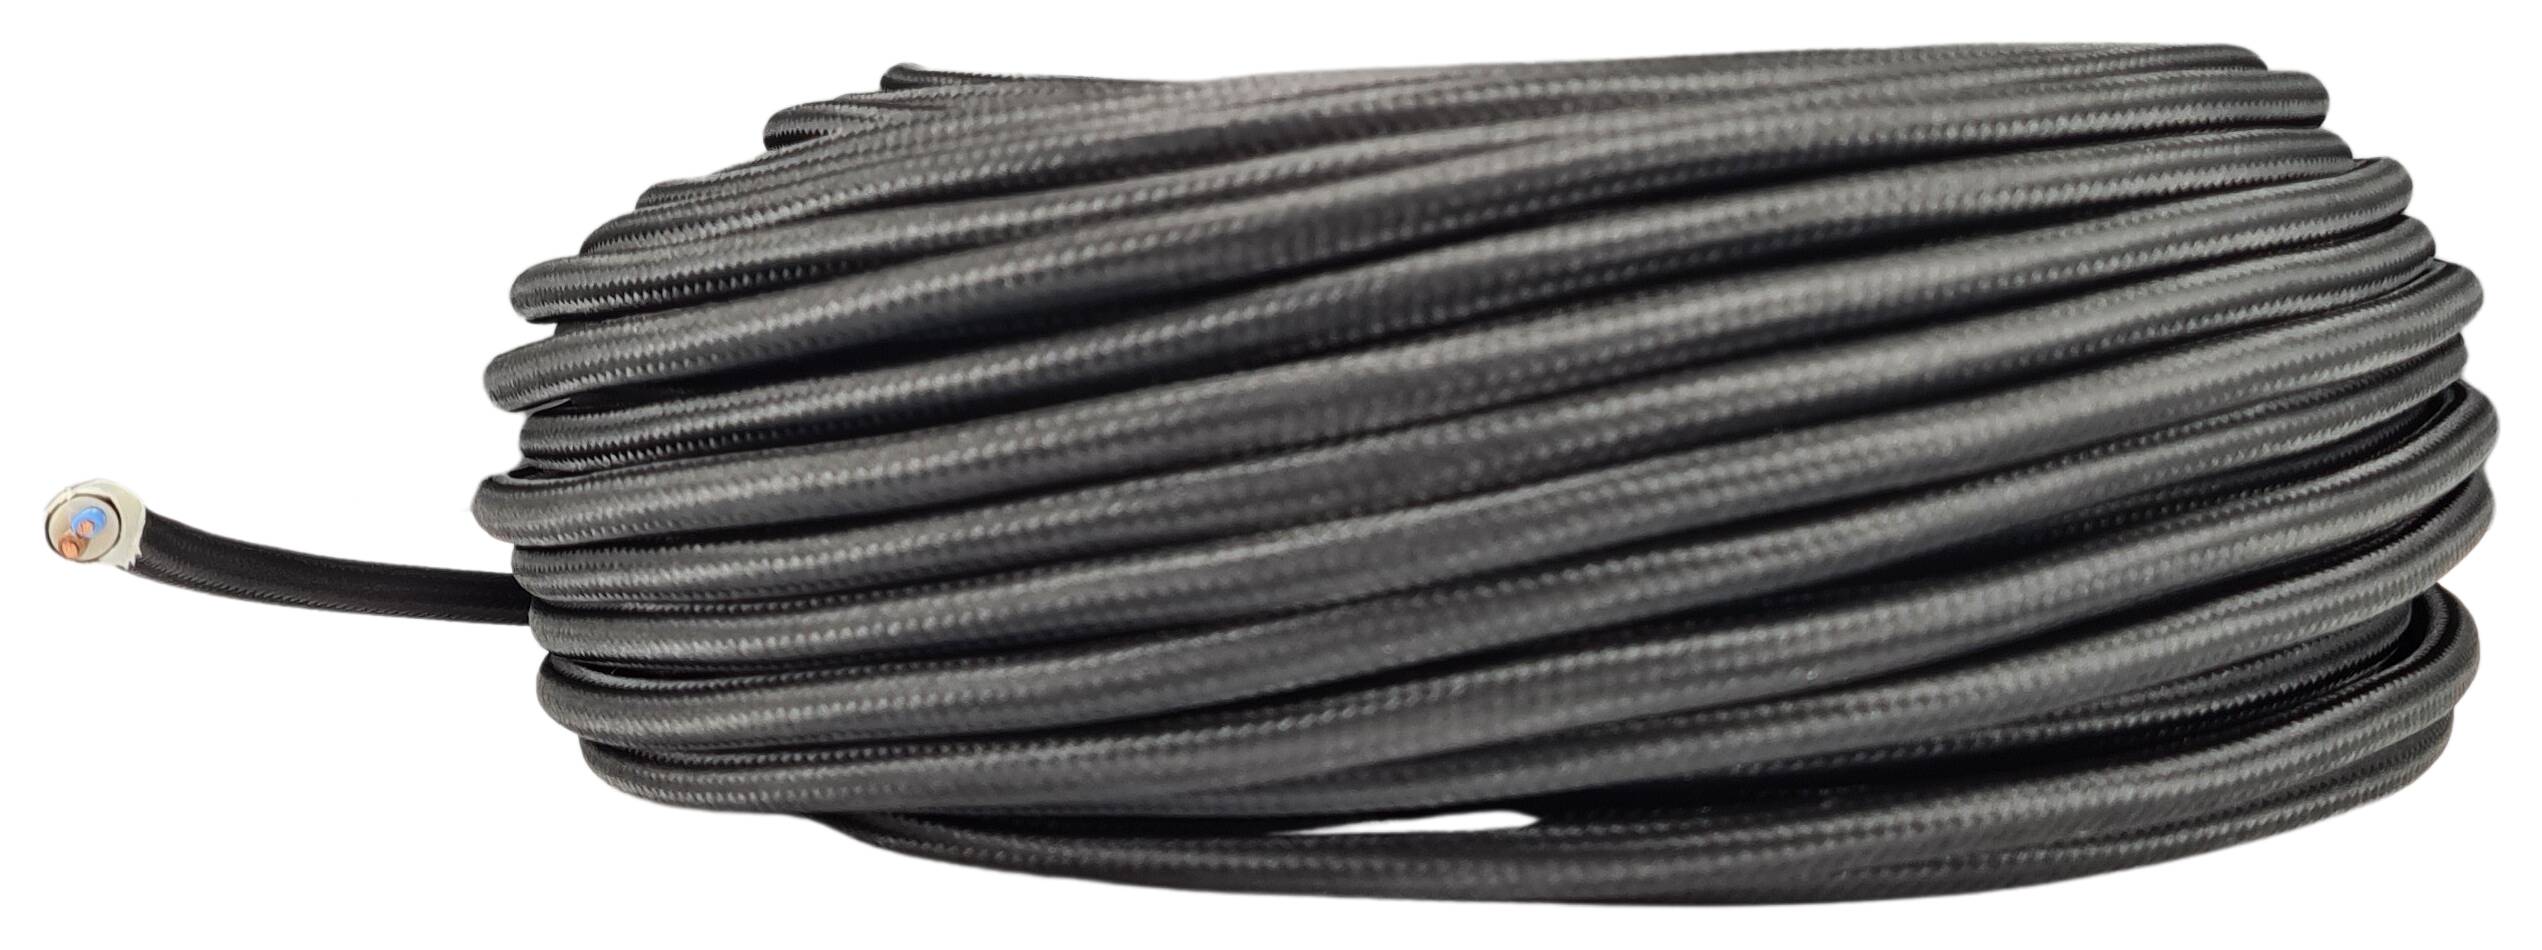 Kabel 2x 0,75 H03VV-F textilummantelt RAL 9005 schwarz